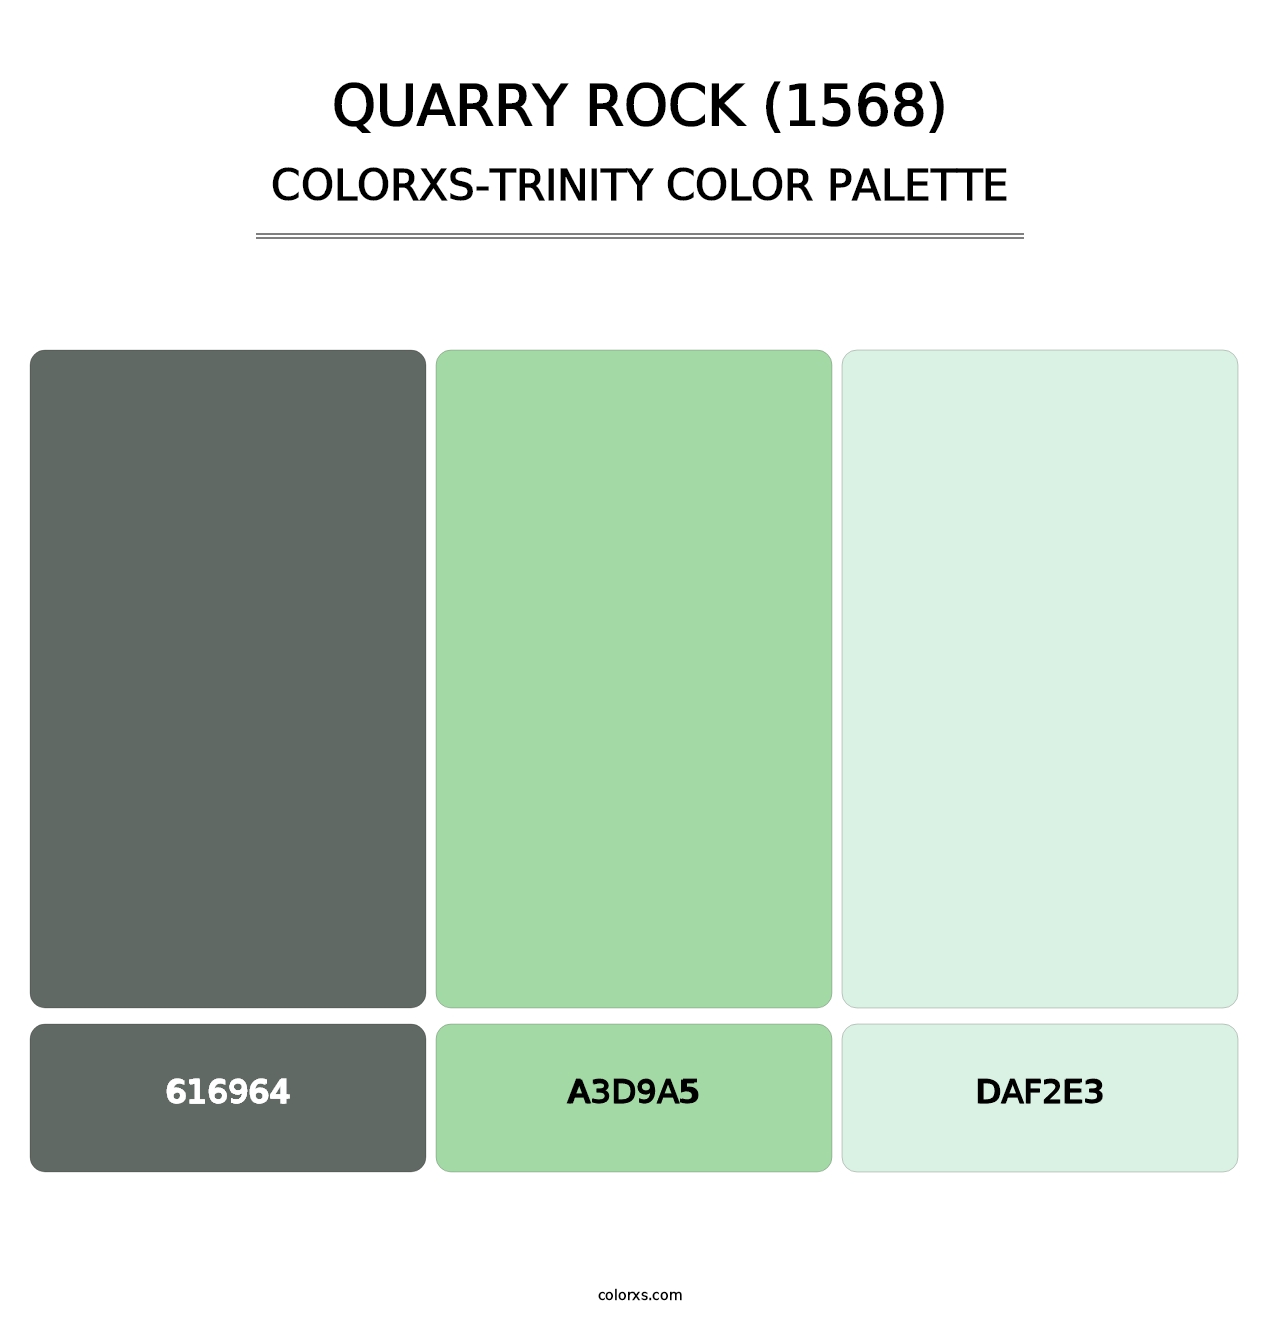 Quarry Rock (1568) - Colorxs Trinity Palette